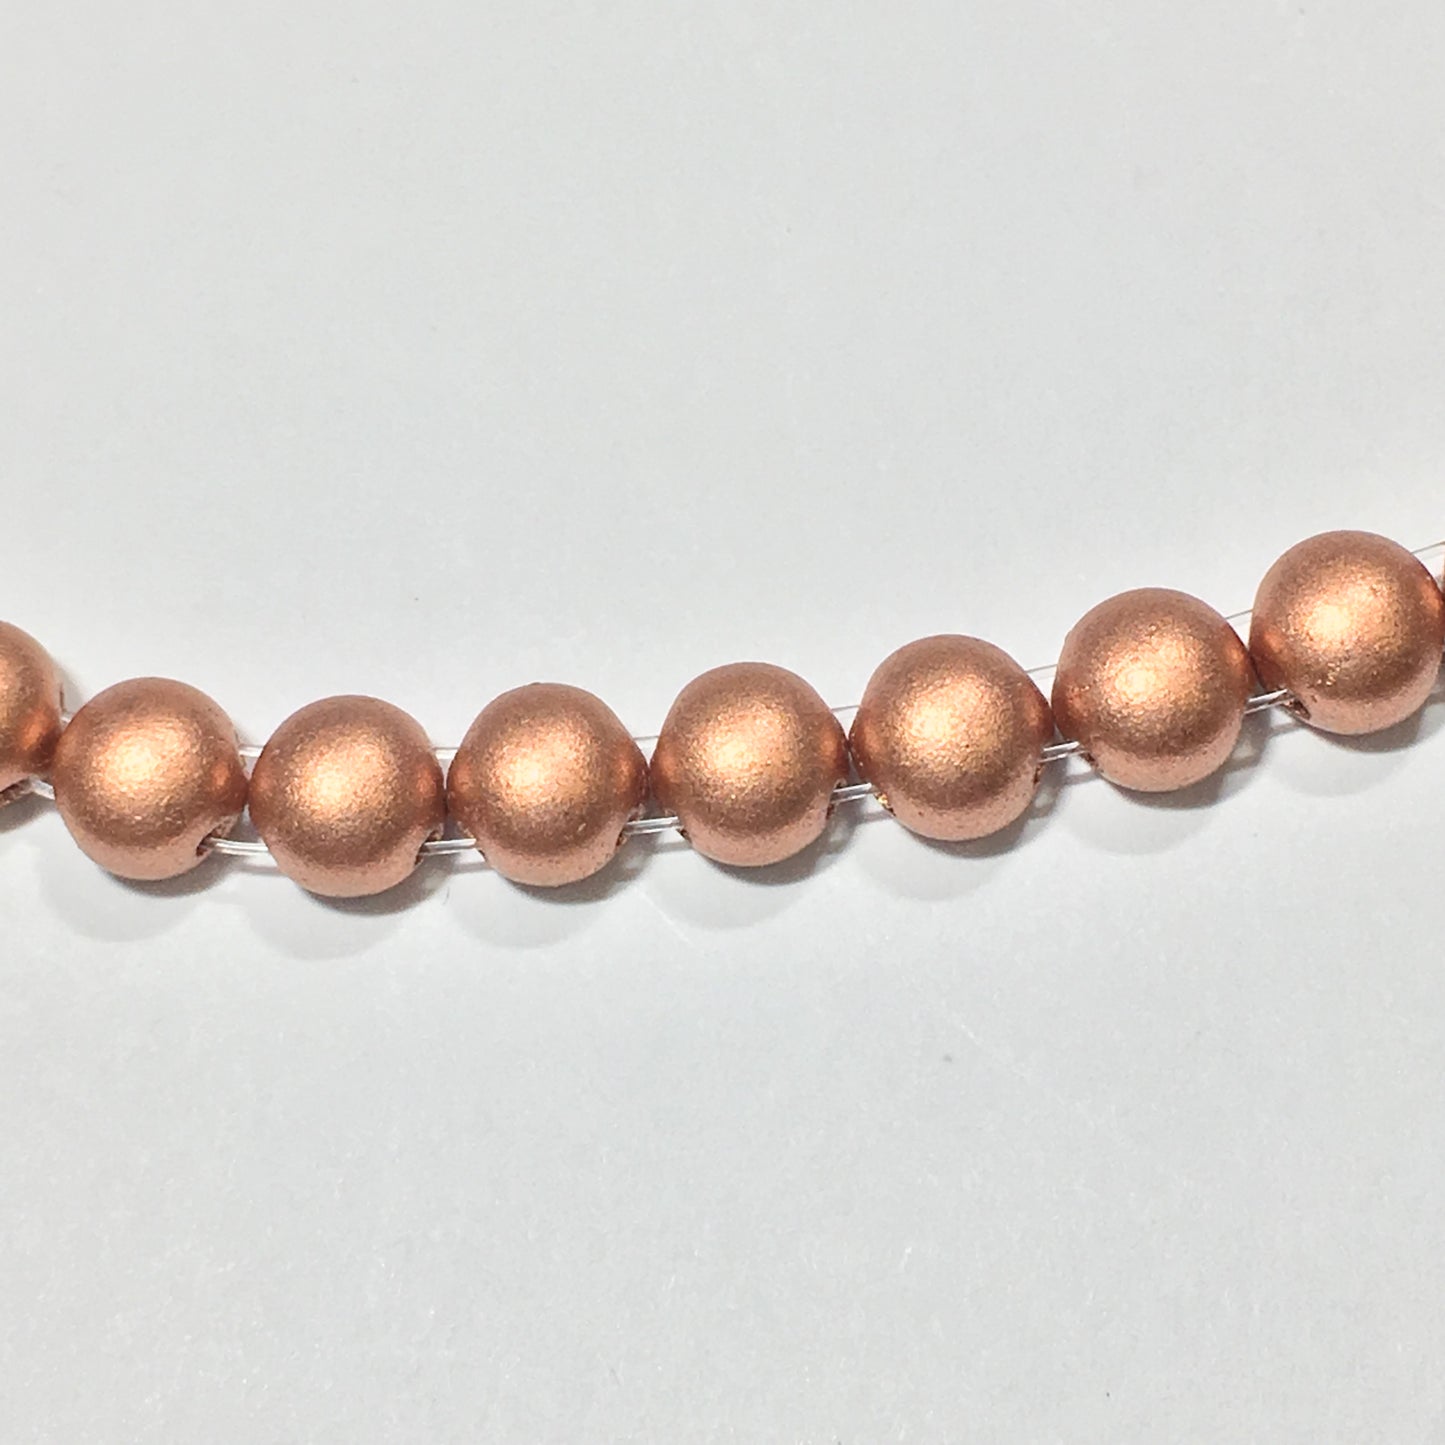 Czech Candy 6 mm 02010-01770 Copper Beads - 16 Beads